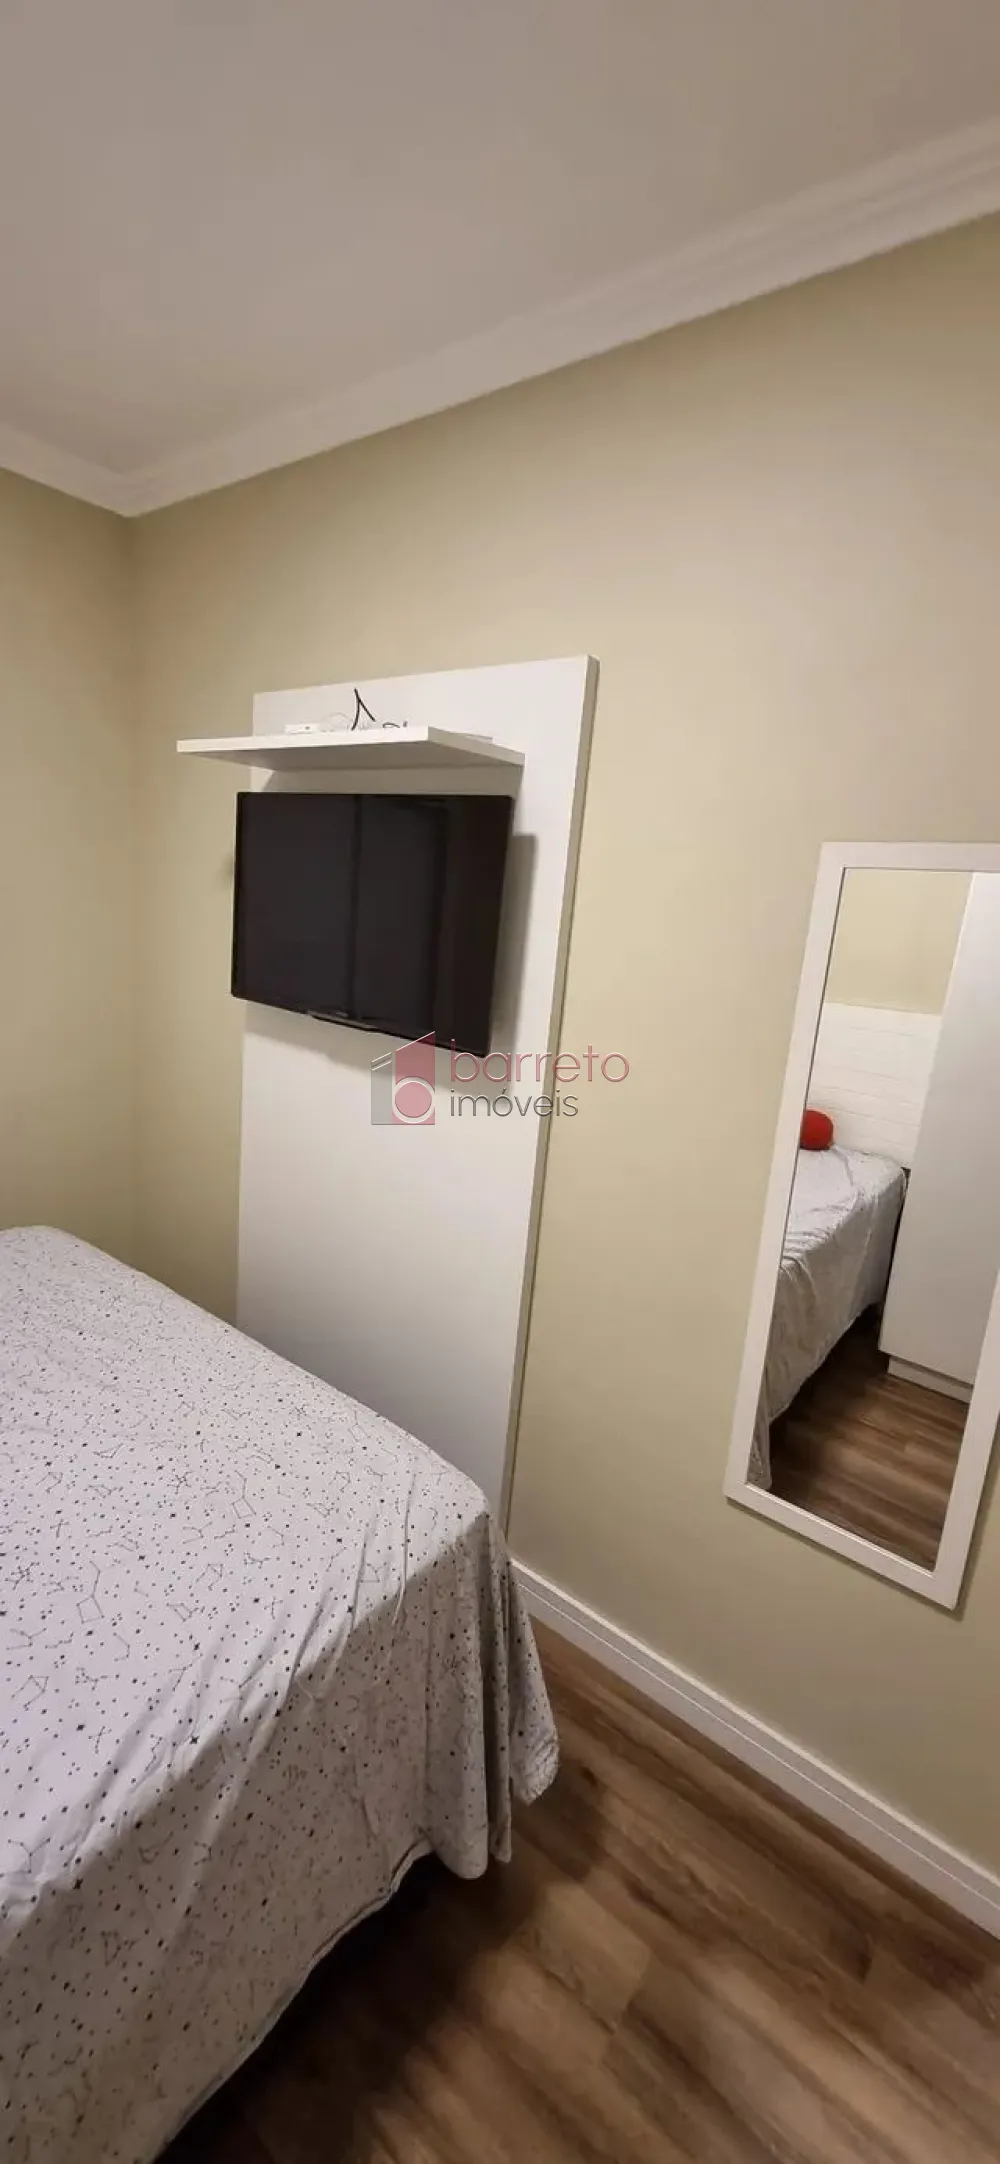 Comprar Apartamento / Padrão em Jundiaí R$ 660.000,00 - Foto 8